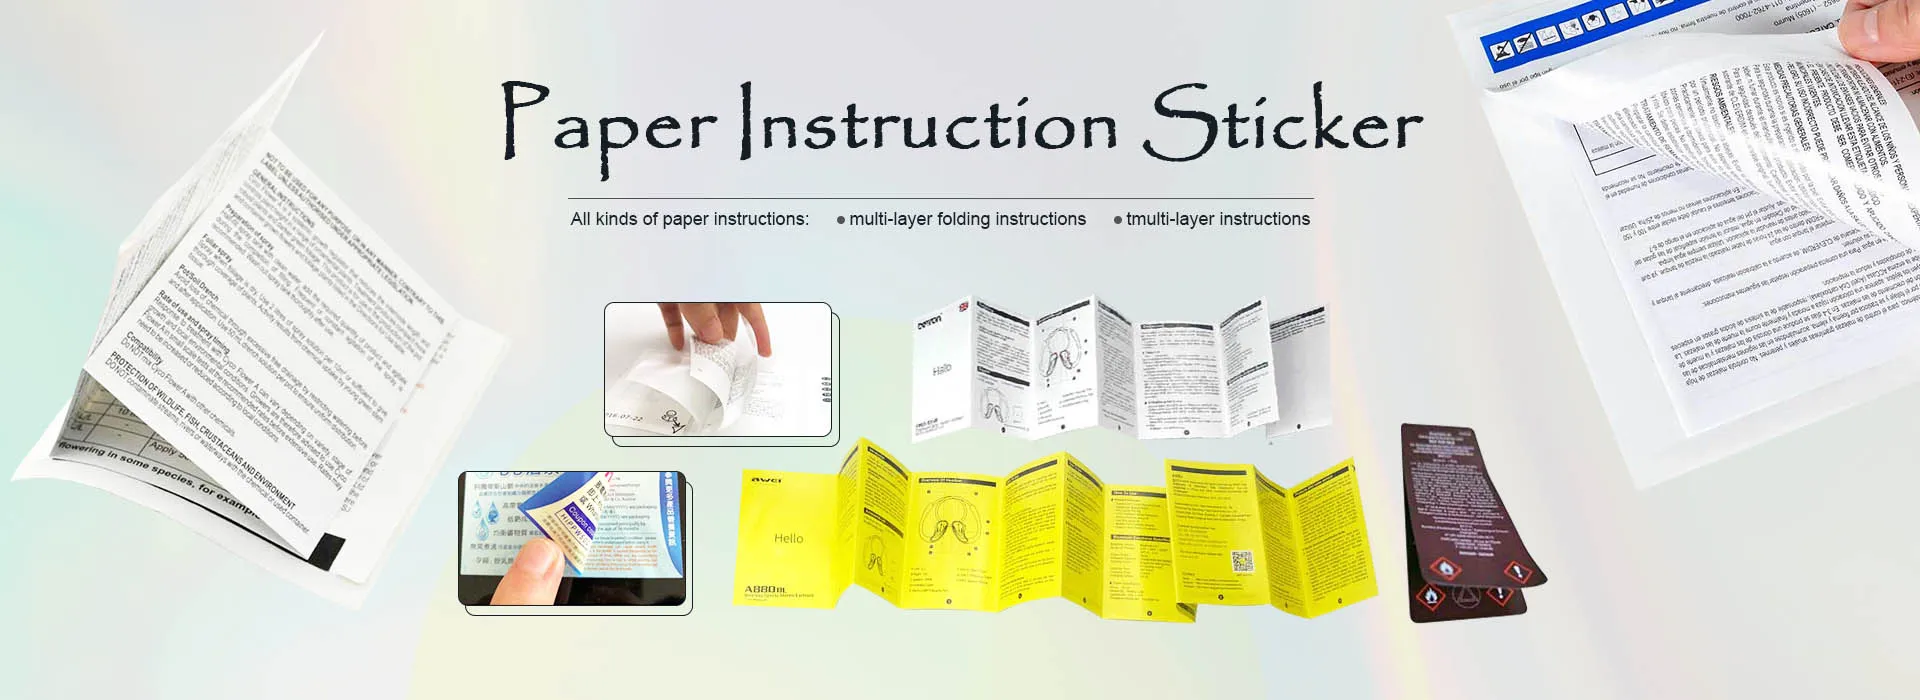 Proveedores de Etiqueta engomada de papel de la instrucción